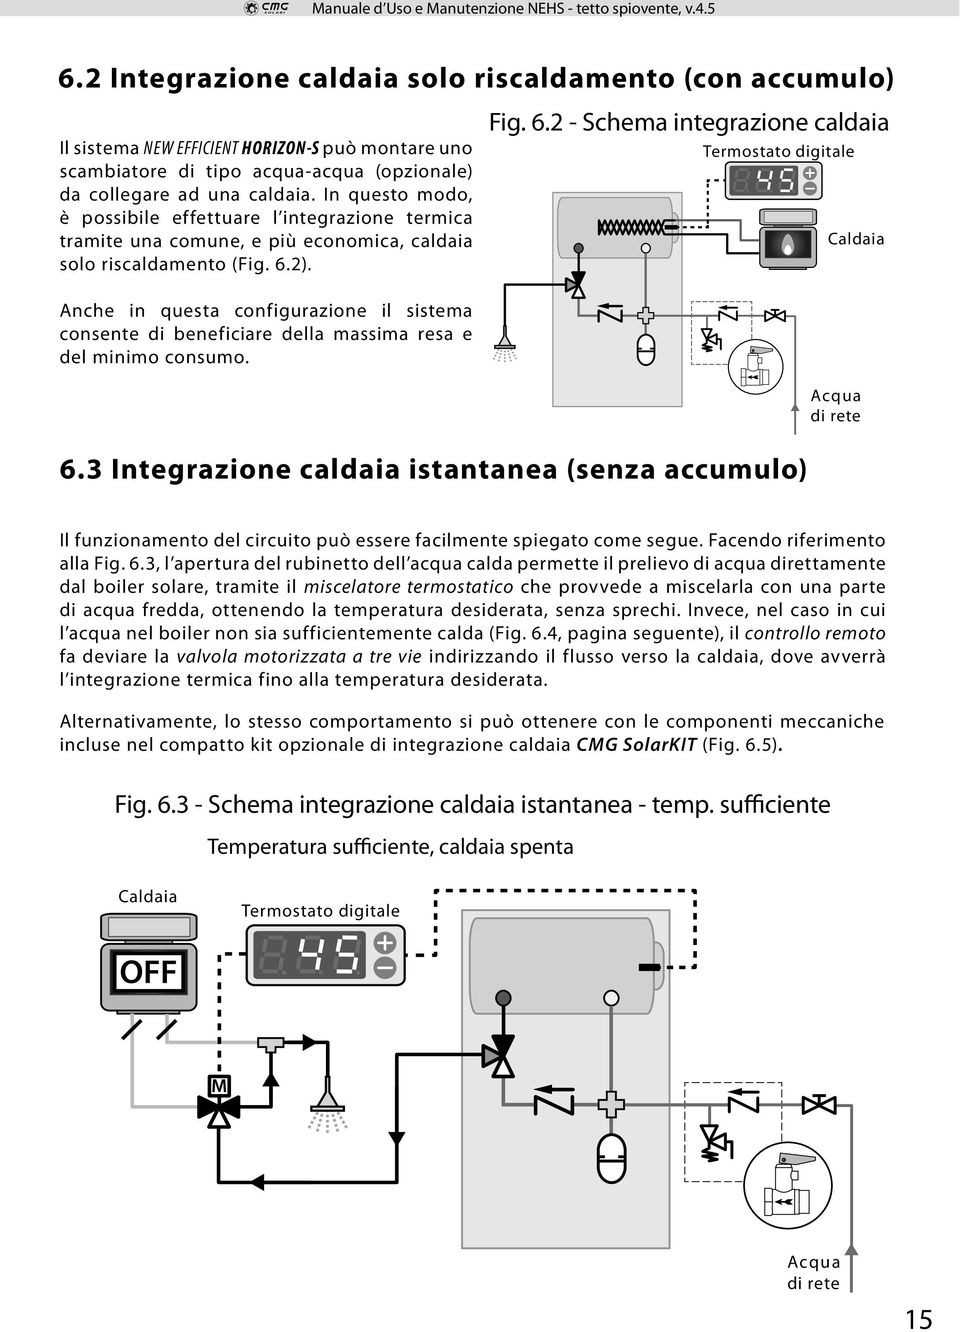 2). Fig. 6.2 - Schema integrazione caldaia Termostato digitale Caldaia Anche in questa configurazione il sistema consente di beneficiare della massima resa e del minimo consumo. Acqua di rete 6.